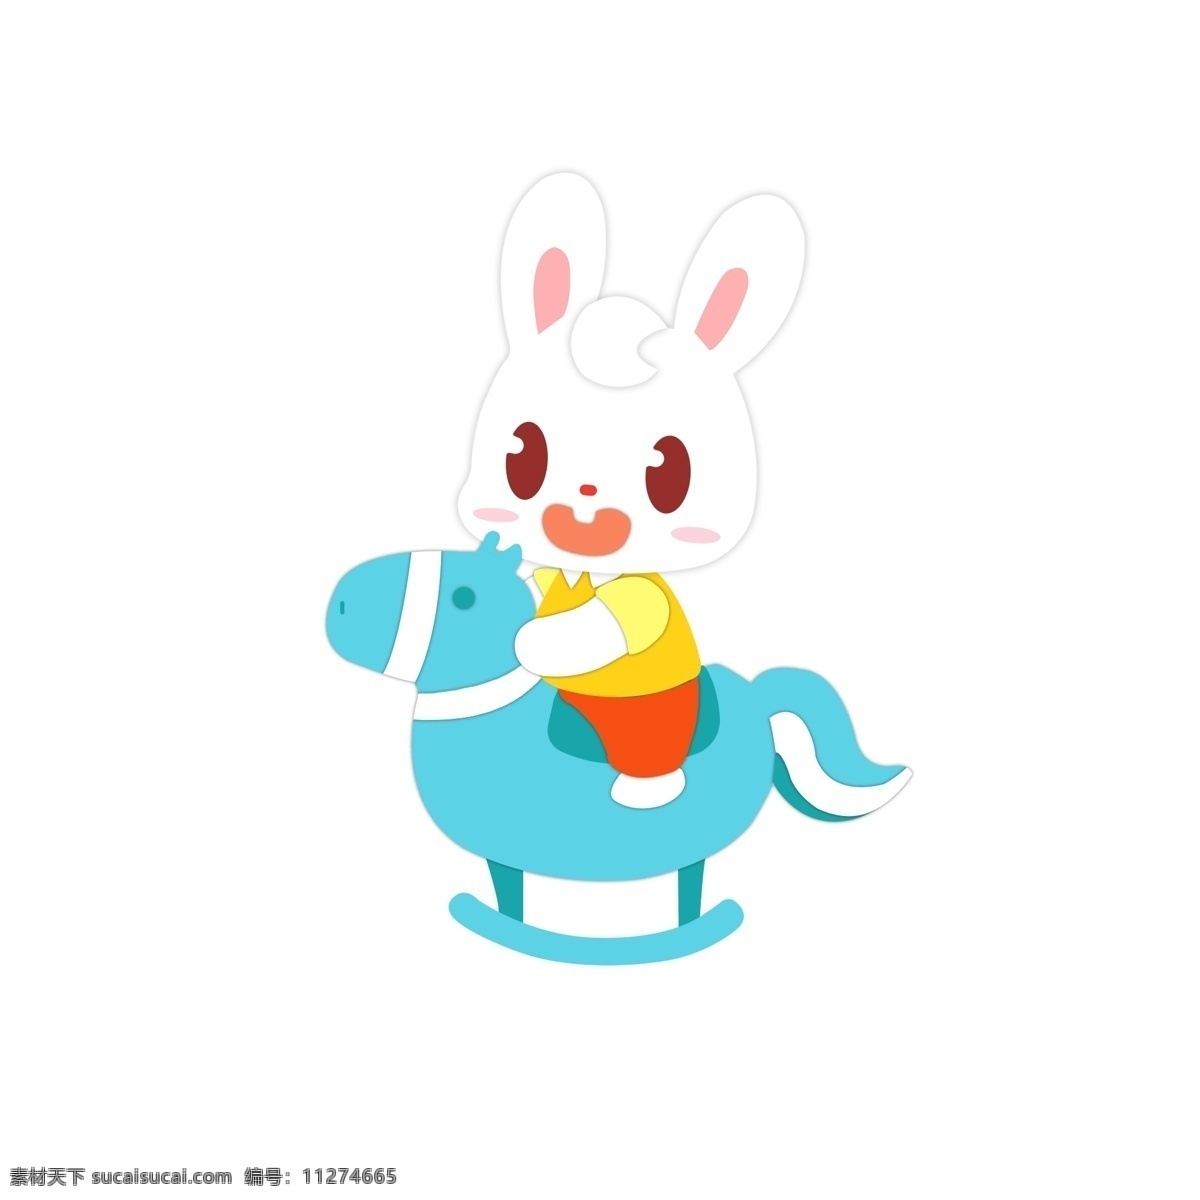 卡通 可爱 骑 木马 兔子 蓝色 黄色 红色 骑木马 手绘 手绘兔子 卡通兔子 卡通木马 可爱兔子